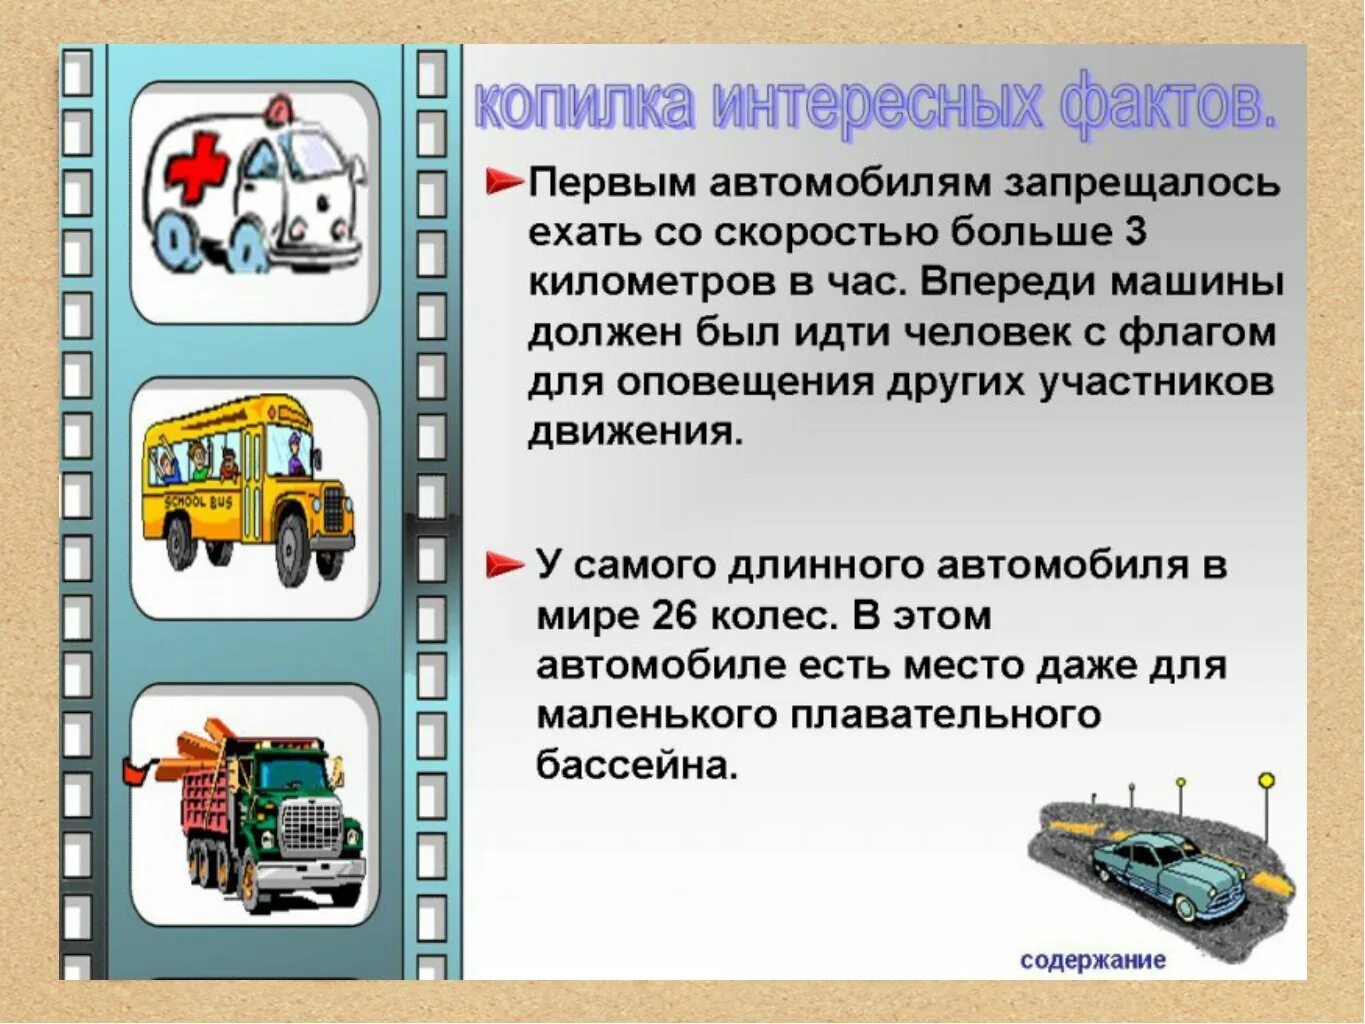 Доклад на тему транспорта. Интересные истории про транспорт. Интересная информация про транспорт. Детям о транспорте. Интересные факты о транспорте для детей.